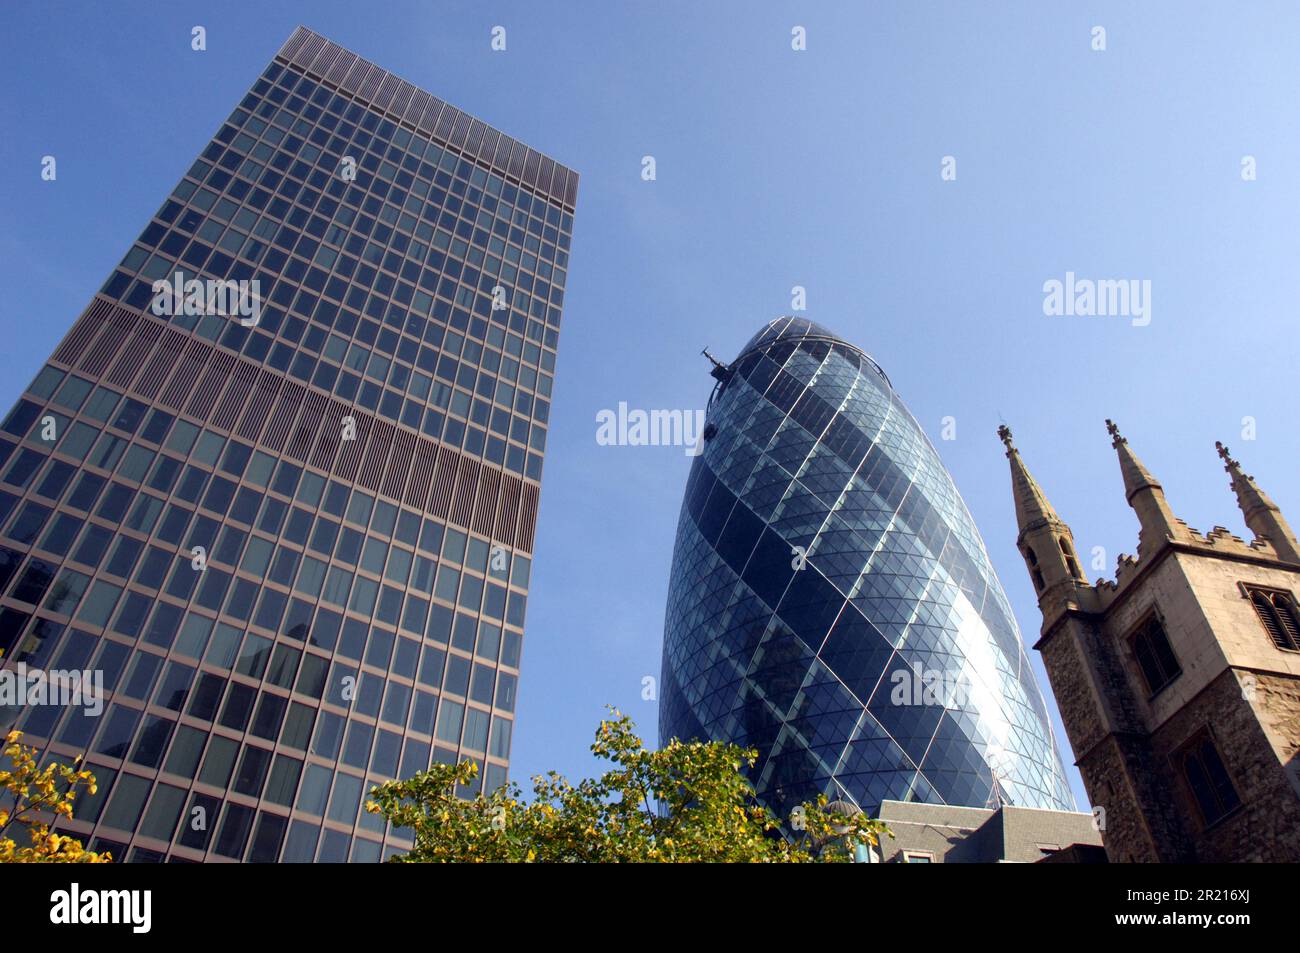 The Gherkin oder Swiss Re Tower in 30 St Mary Axe im Hauptfinanzviertel von London. Es ist 180 Meter hoch und damit das zweithöchste Gebäude in der City of London, nach Tower 42, und das sechstgrößte in ganz London. Das Gebäude wurde vom Pritzker-Preisträger Lord Foster und dem Ex-Partner Ken Shuttleworth und Arup Engineers entworfen und von Skanska (Schweden) zwischen 2001 und 2004 errichtet. Stockfoto